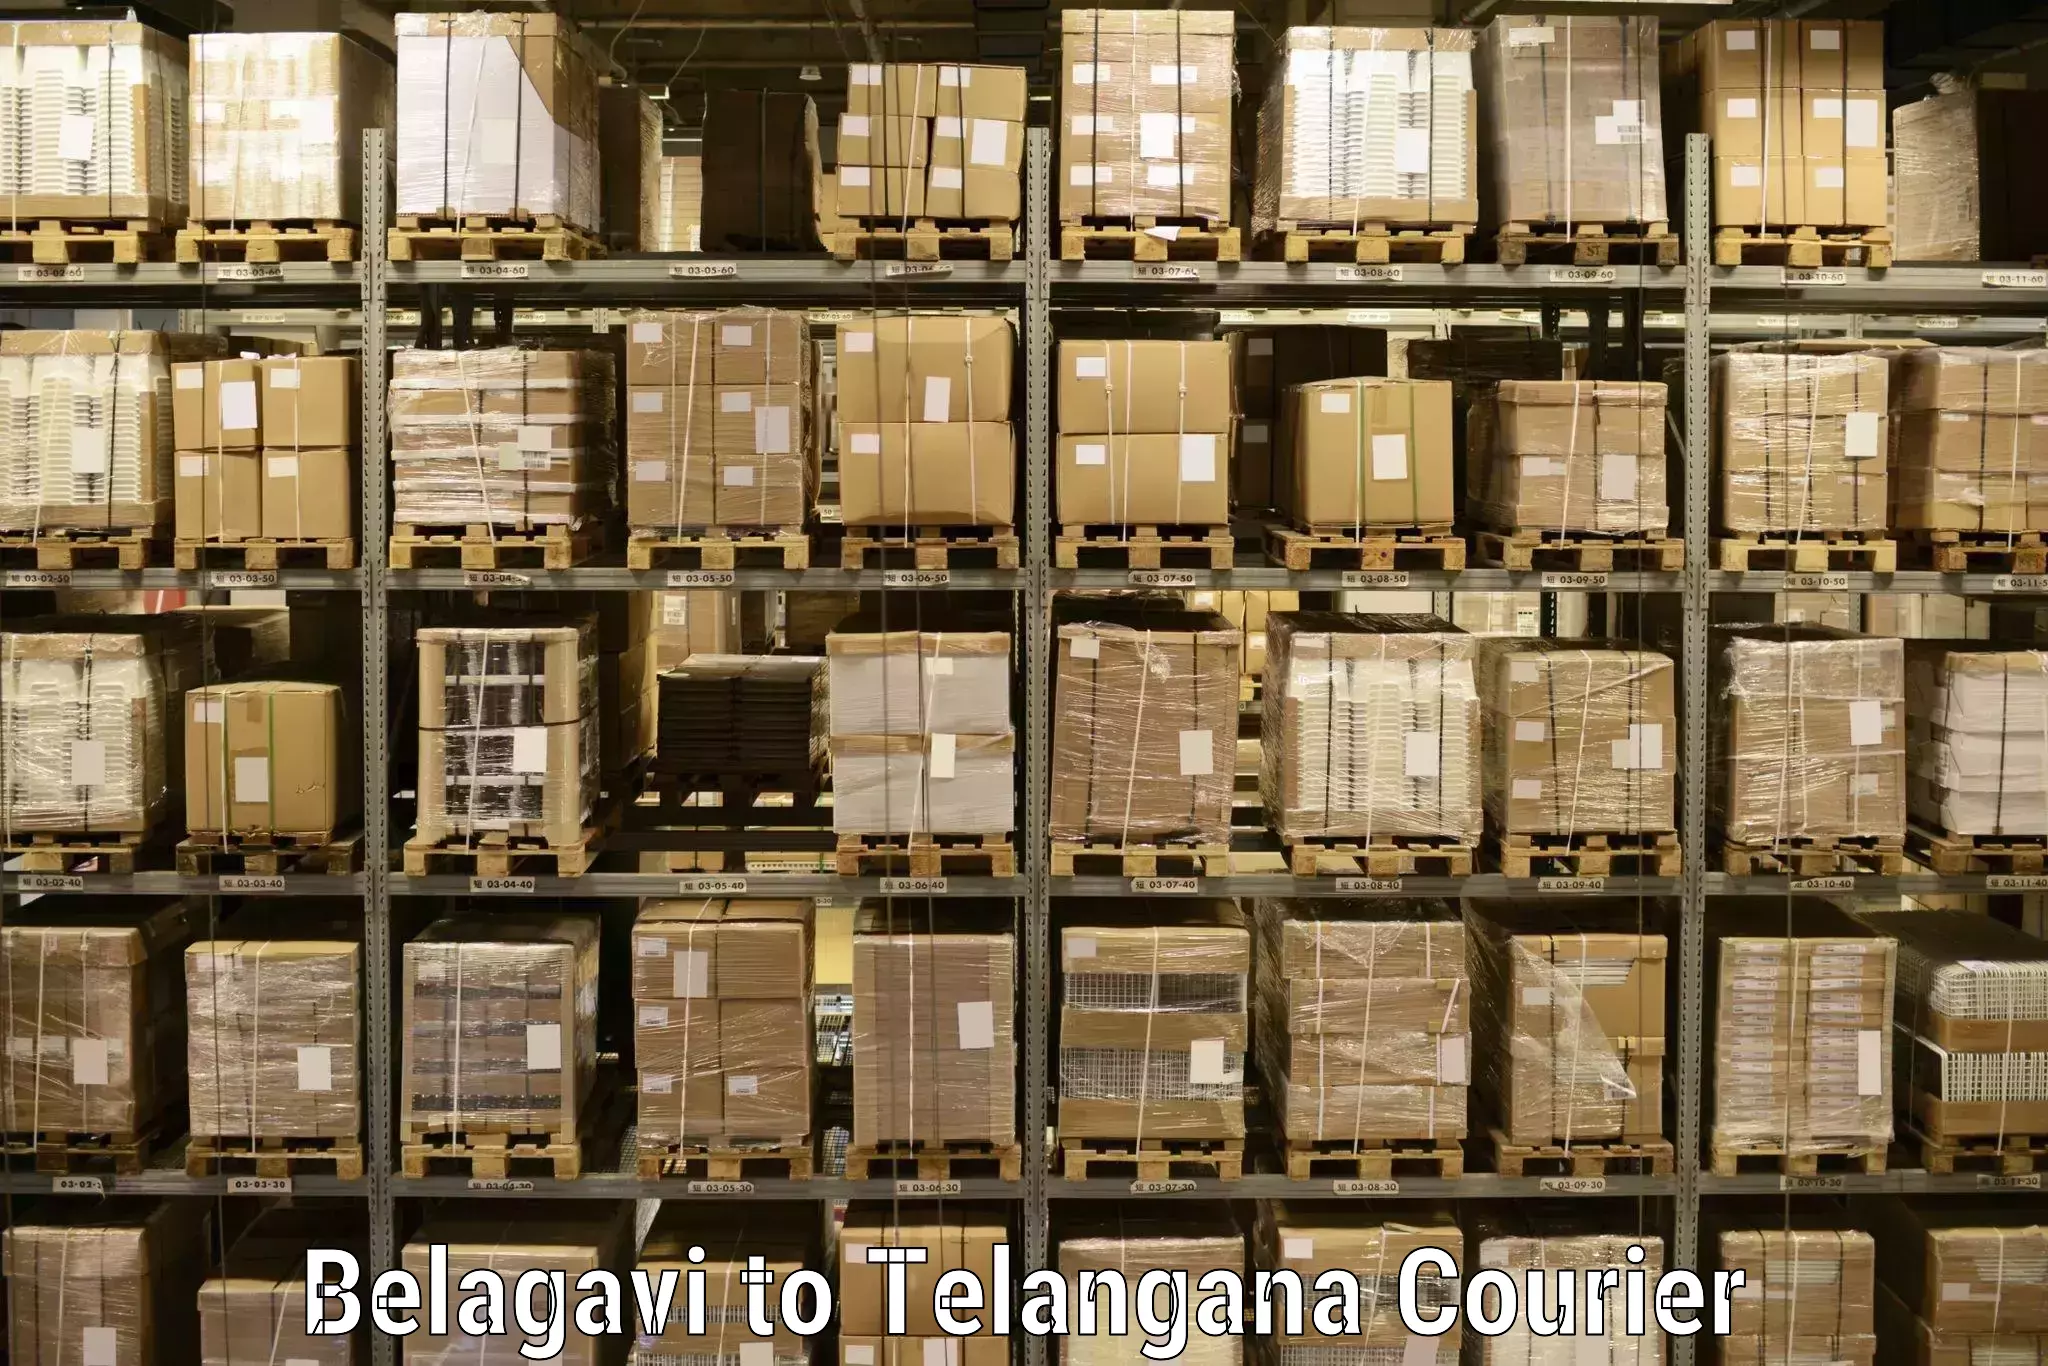 Seamless shipping service Belagavi to Wanaparthy